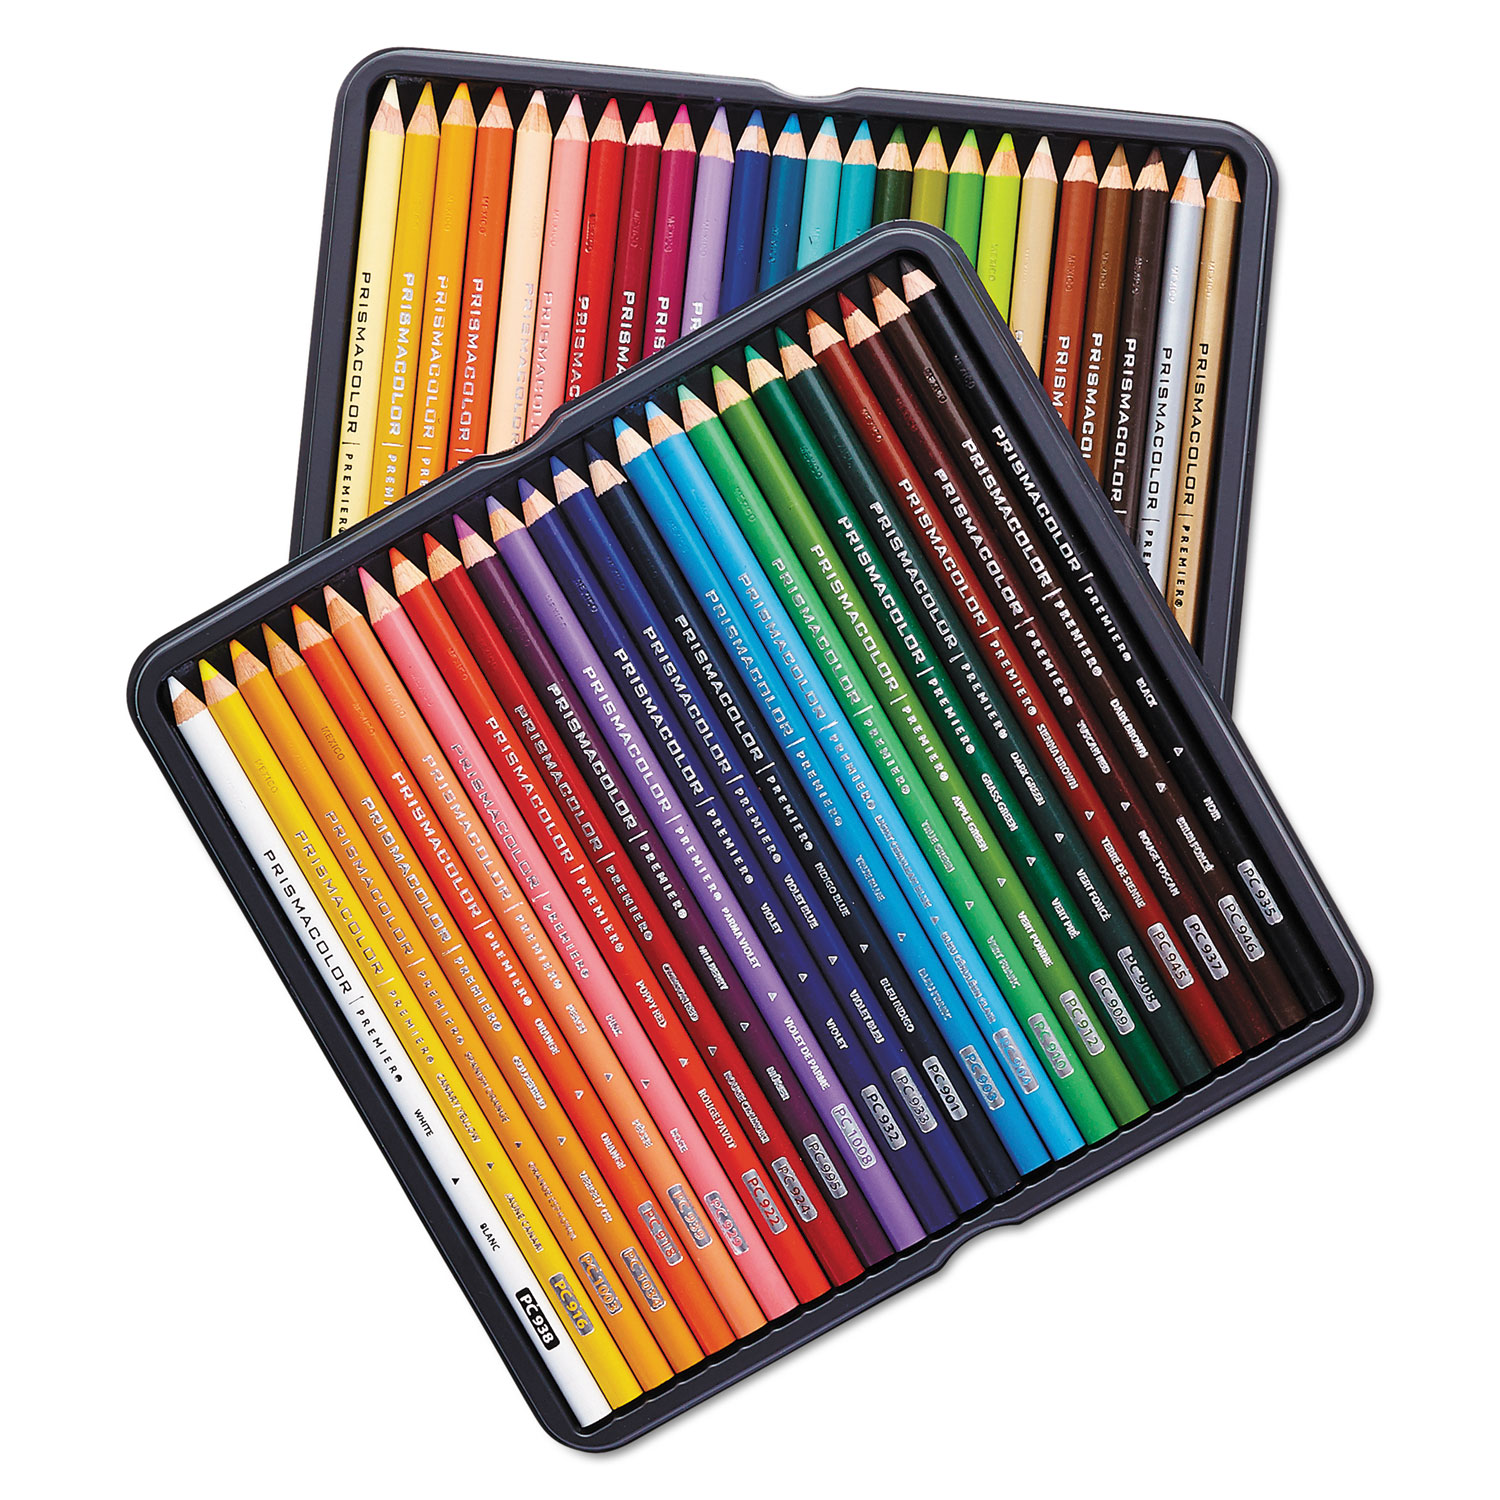 Prismacolor Premier Themed Colored Pencil Set